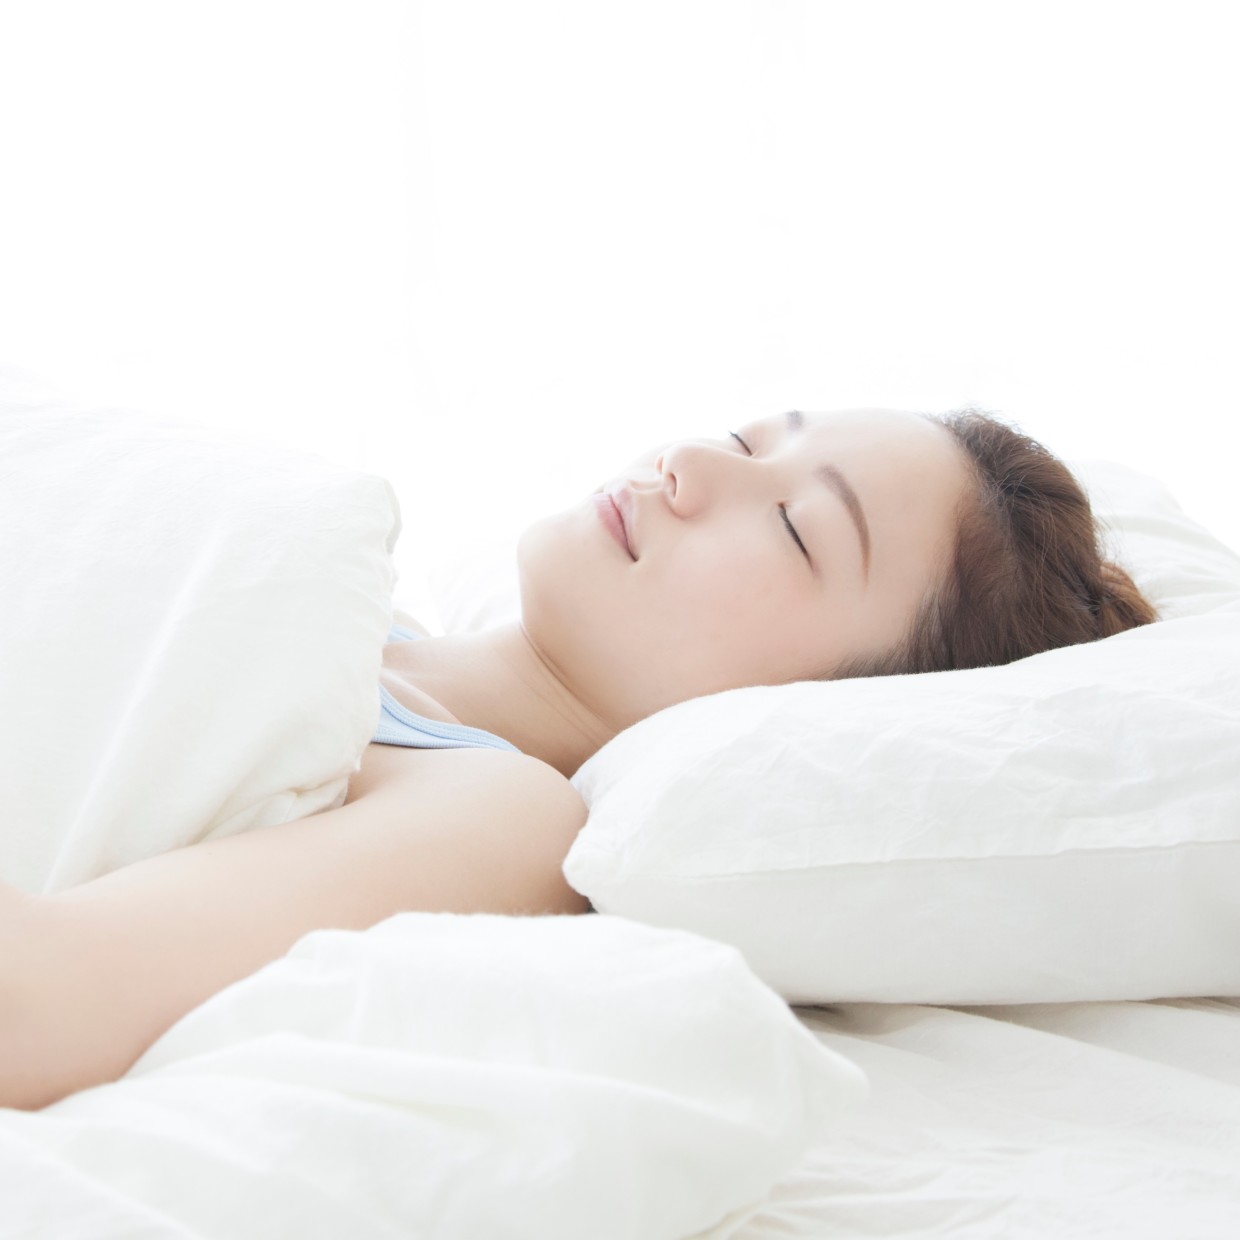  睡眠の質は「マクラ」で決まる!?ぐっすり眠るために“選ぶべき枕”とは 